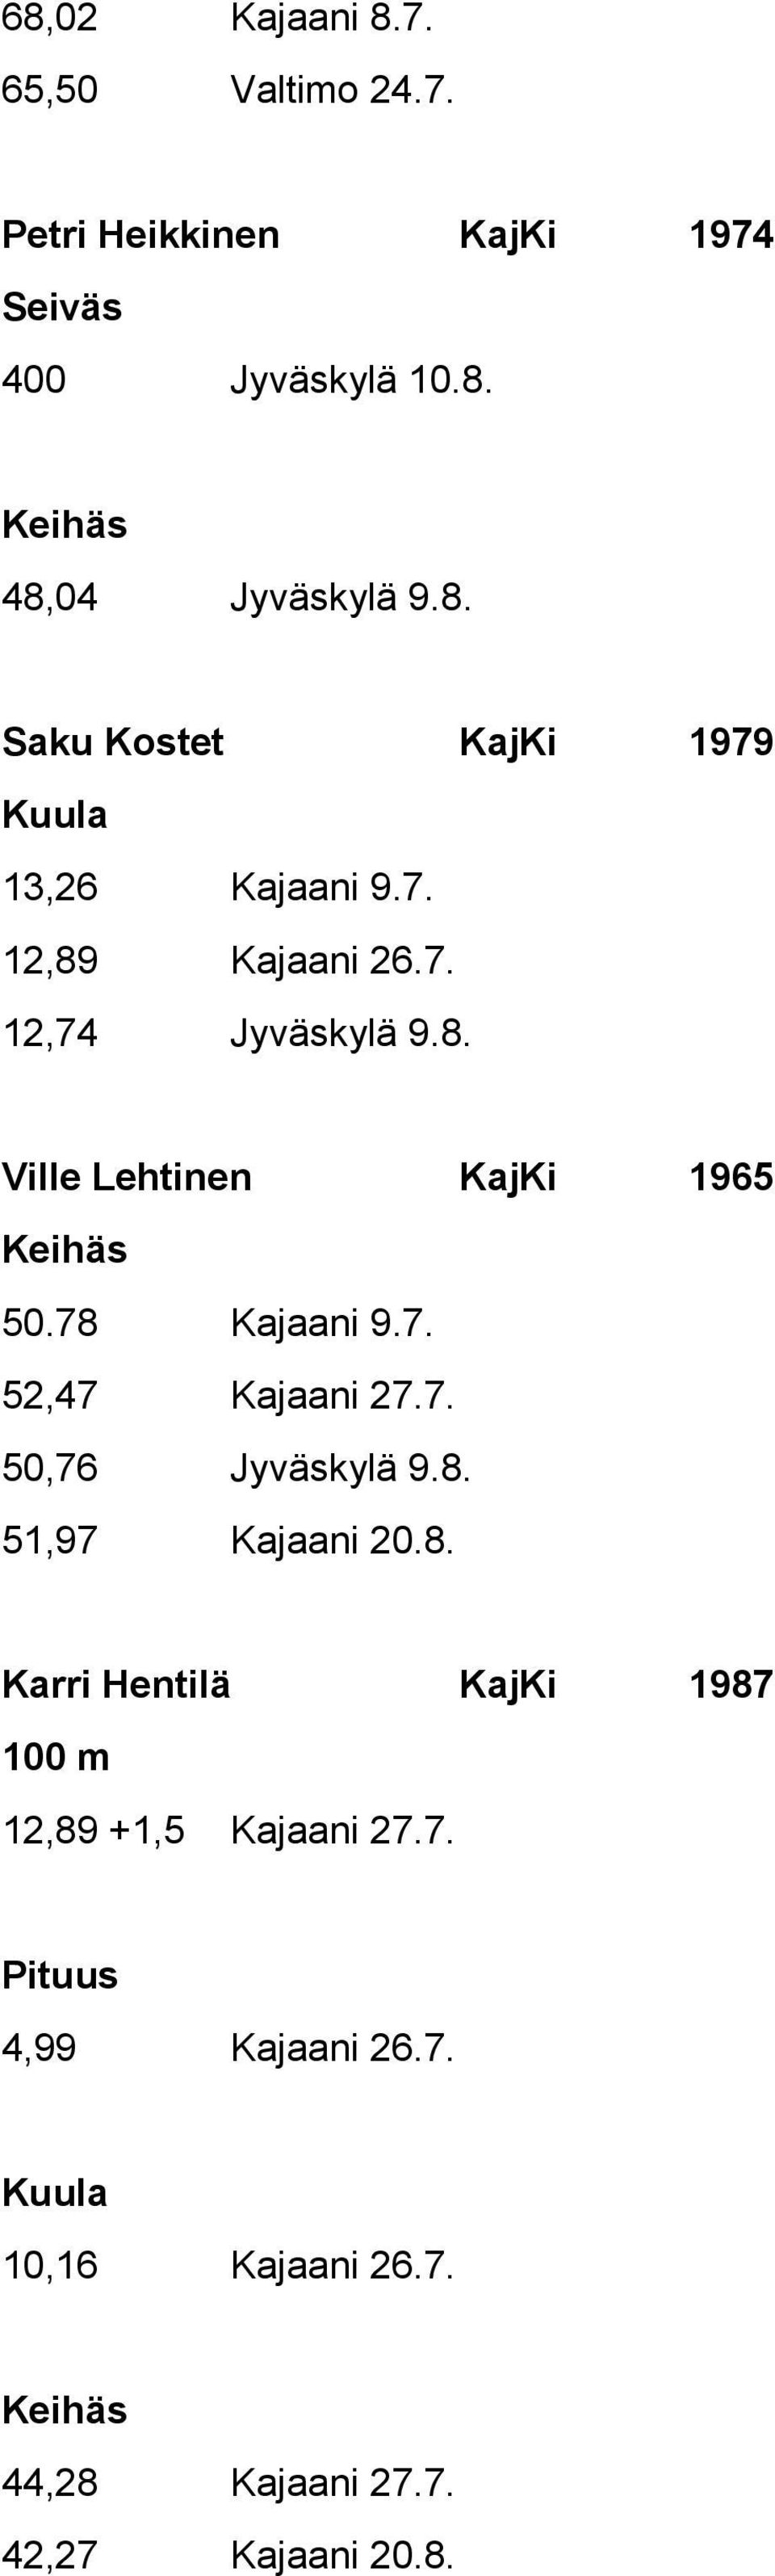 78 Kajaani 9.7. 52,47 Kajaani 27.7. 50,76 Jyväskylä 9.8. 51,97 Kajaani 20.8. Karri Hentilä KajKi 1987 12,89 +1,5 Kajaani 27.